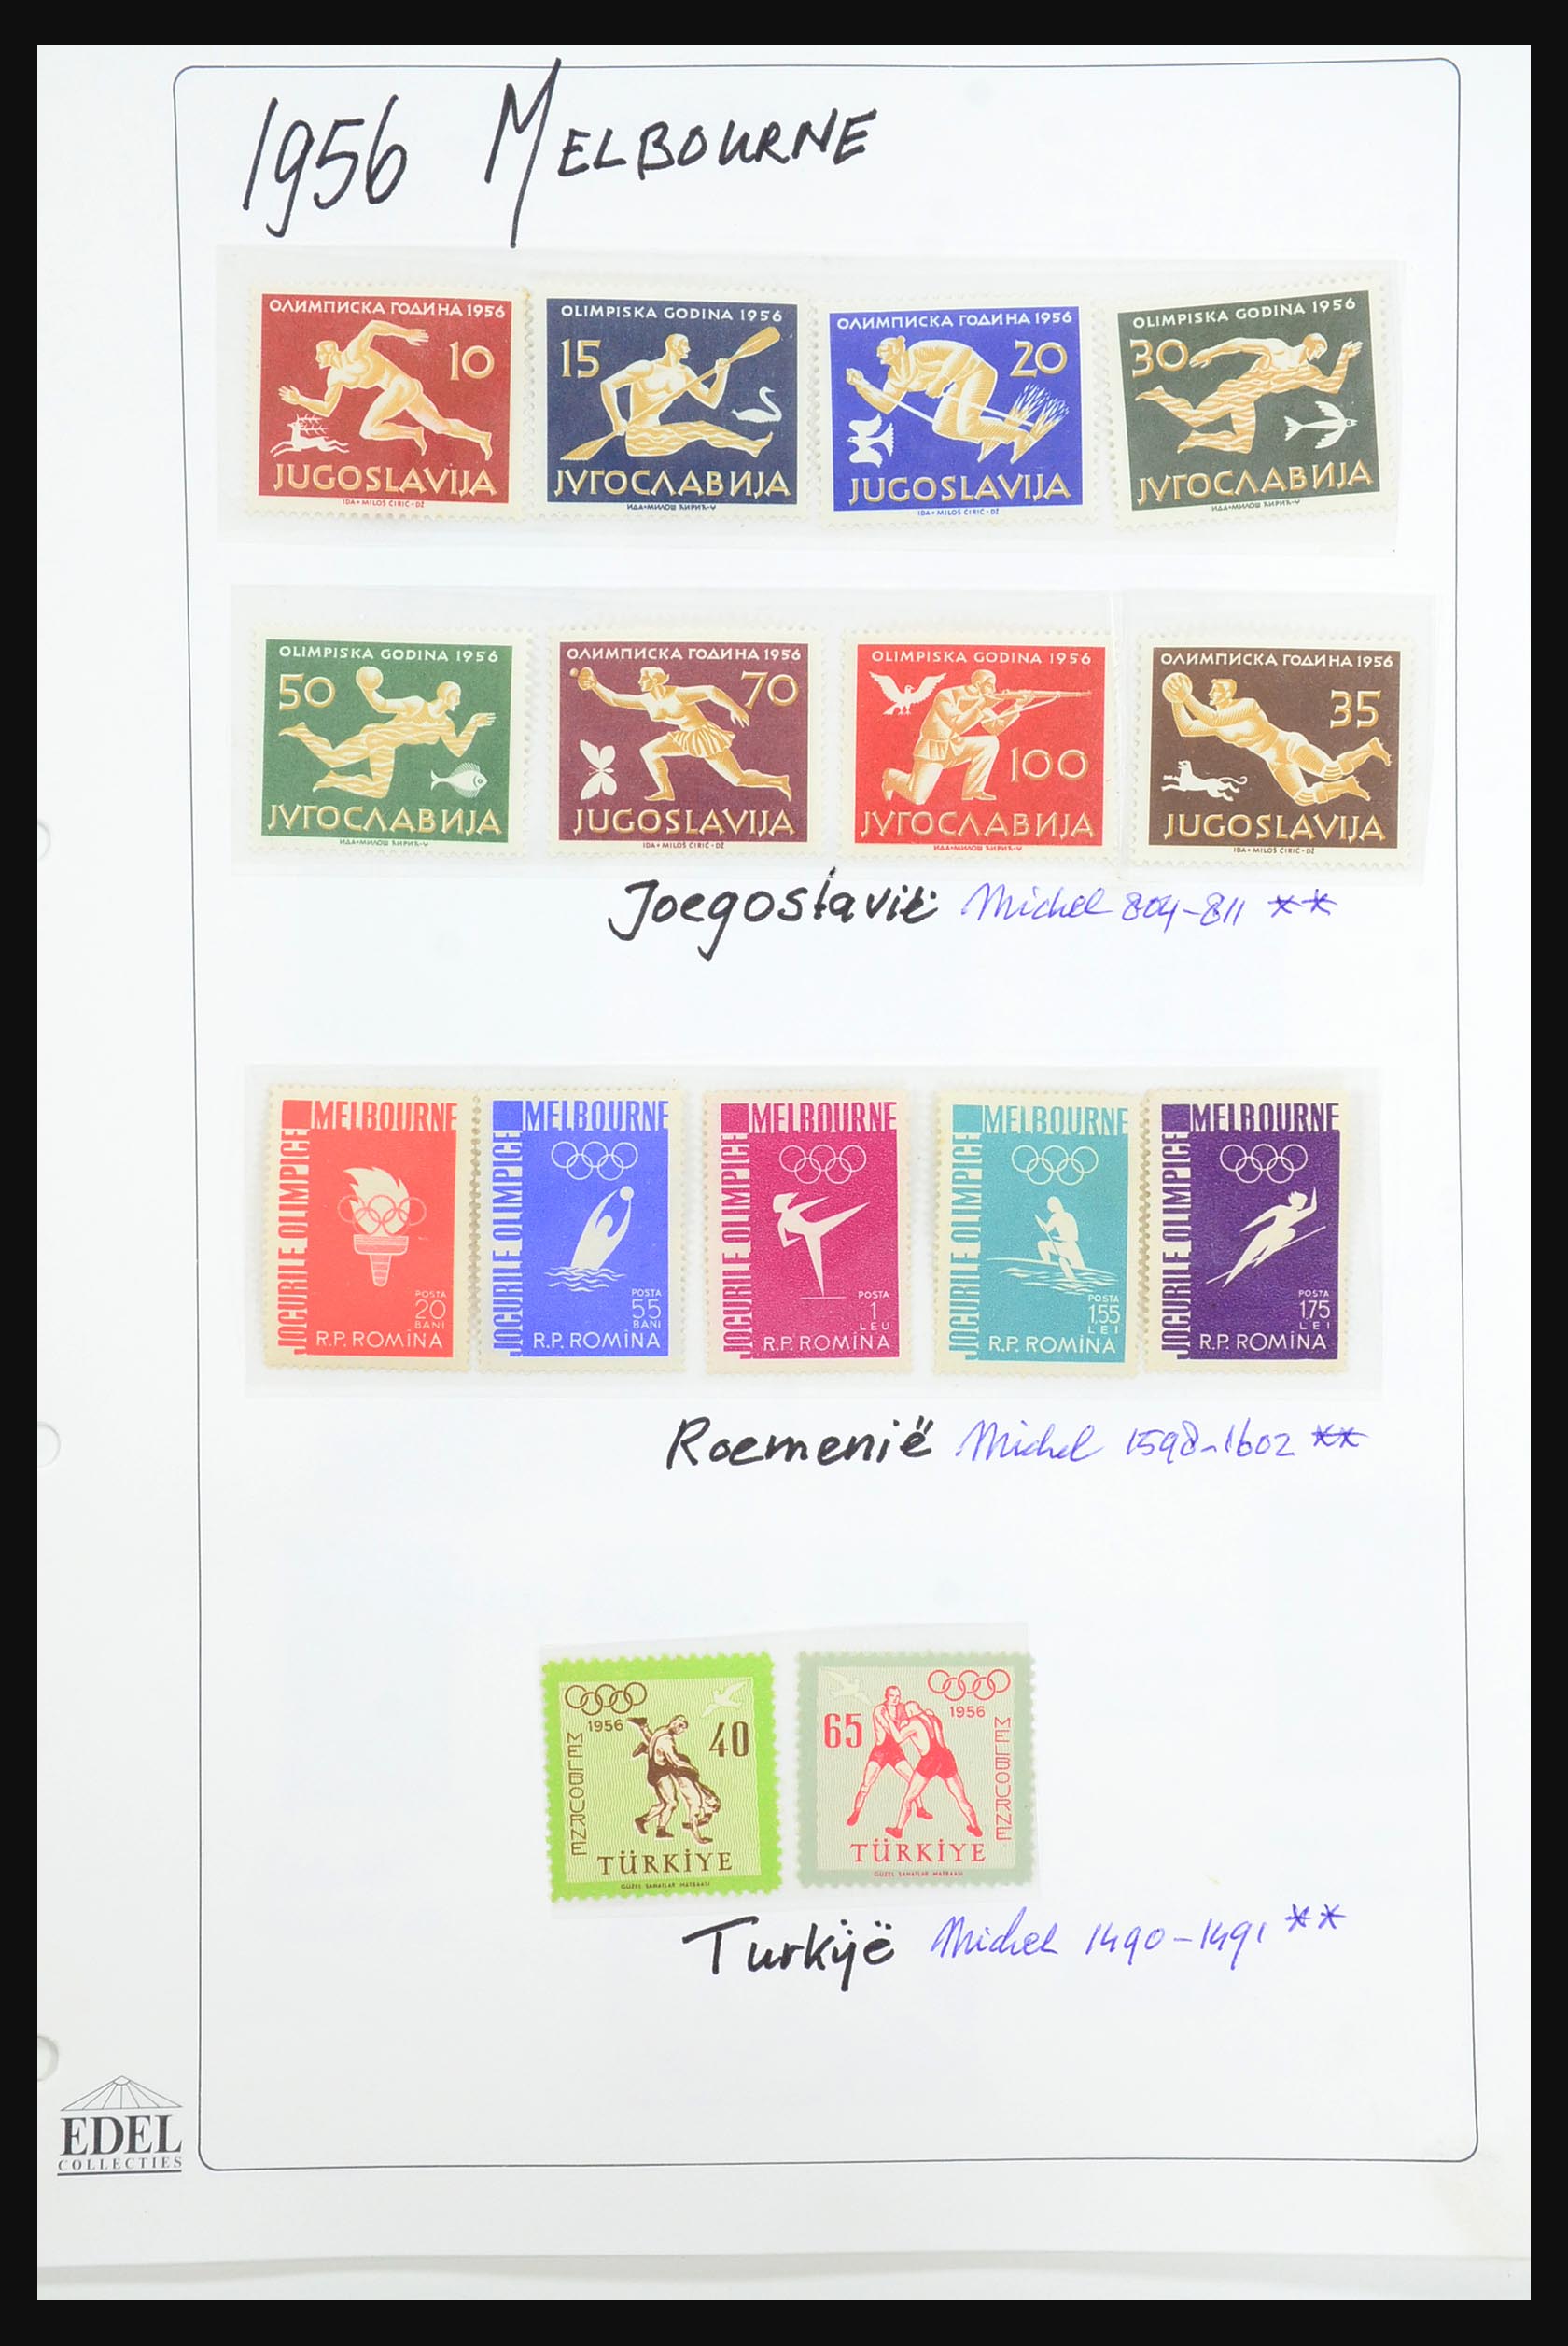 31518 0053 - 31518 Olympische Spelen 1896-1996.